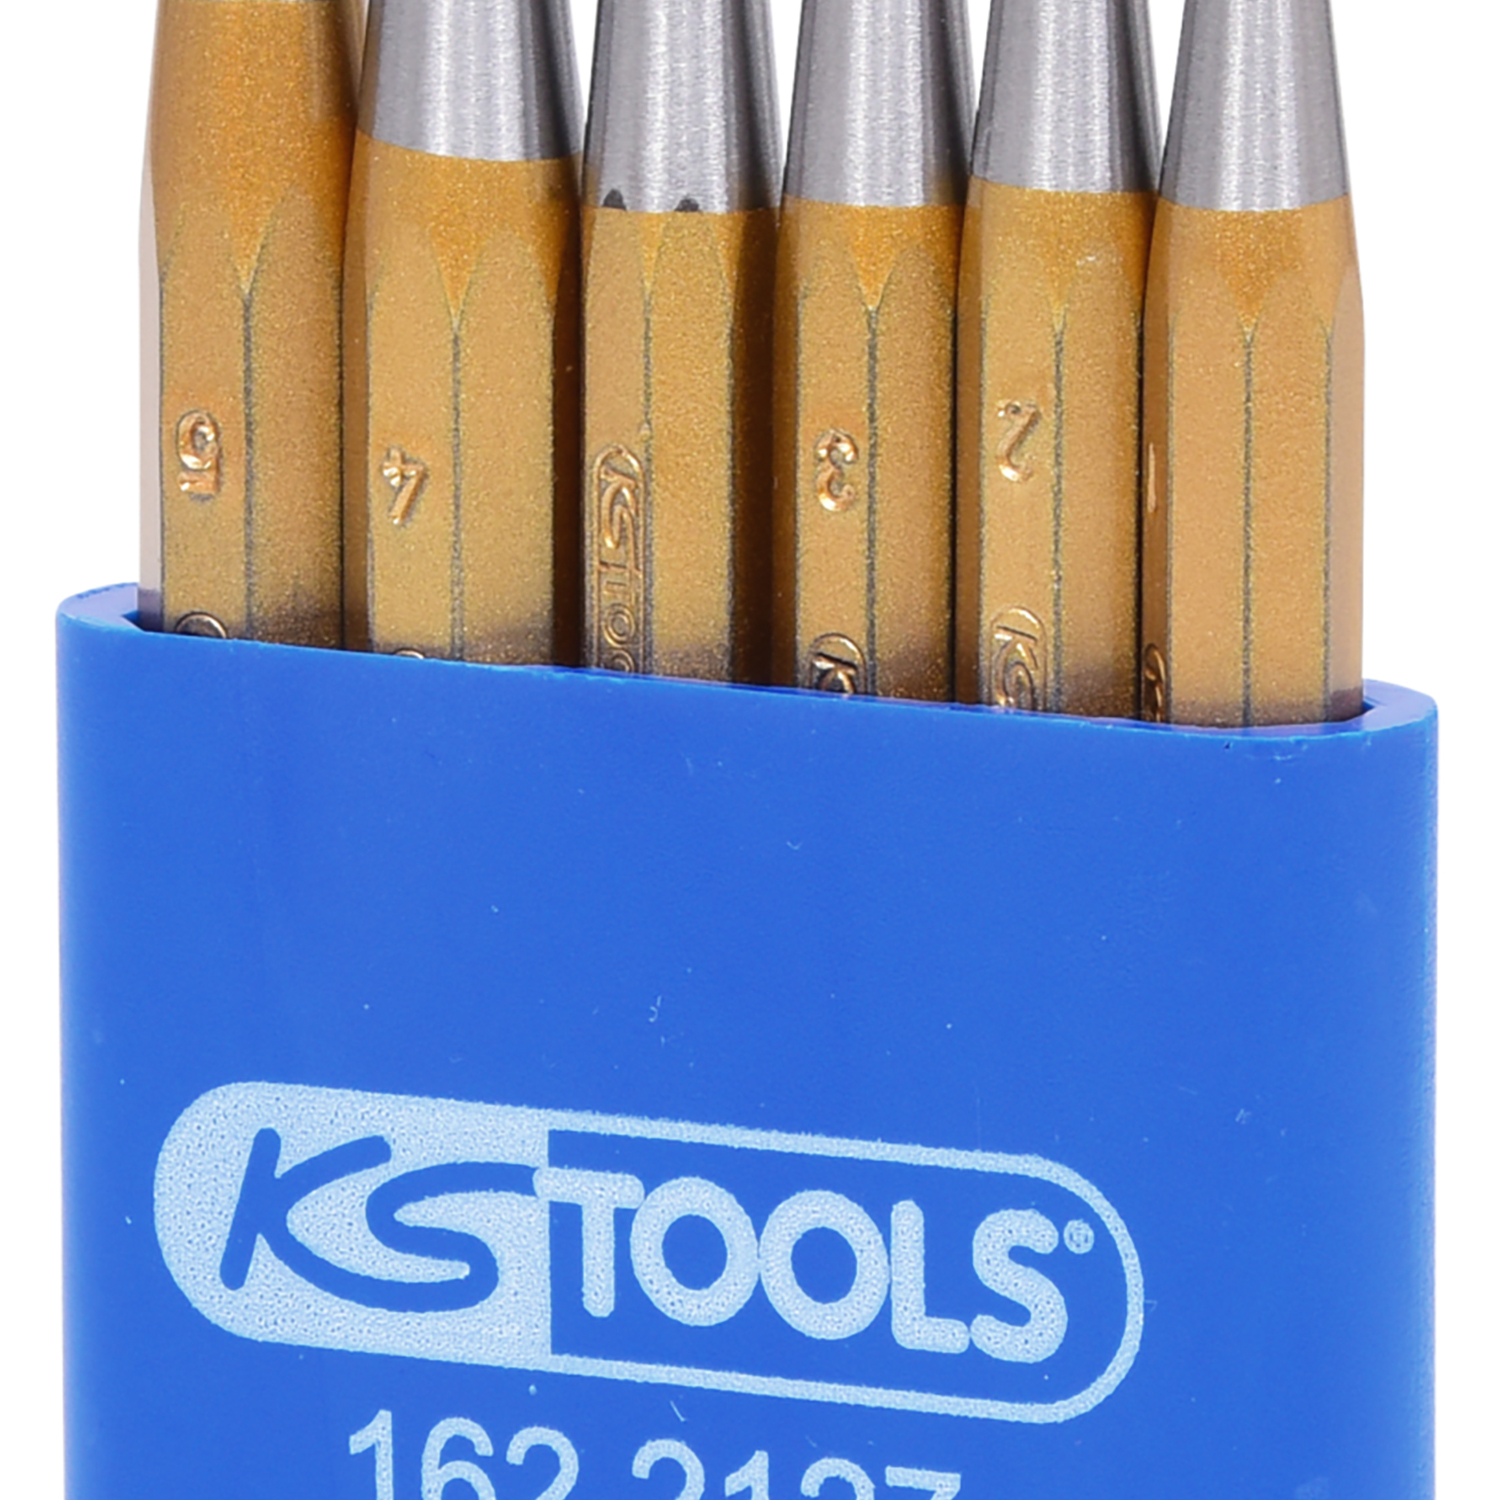 Werkzeuge24 - KS Tools Premiumwerkzeuge - Durchtreibersatz, 6-tlg in  Kunststoffständer